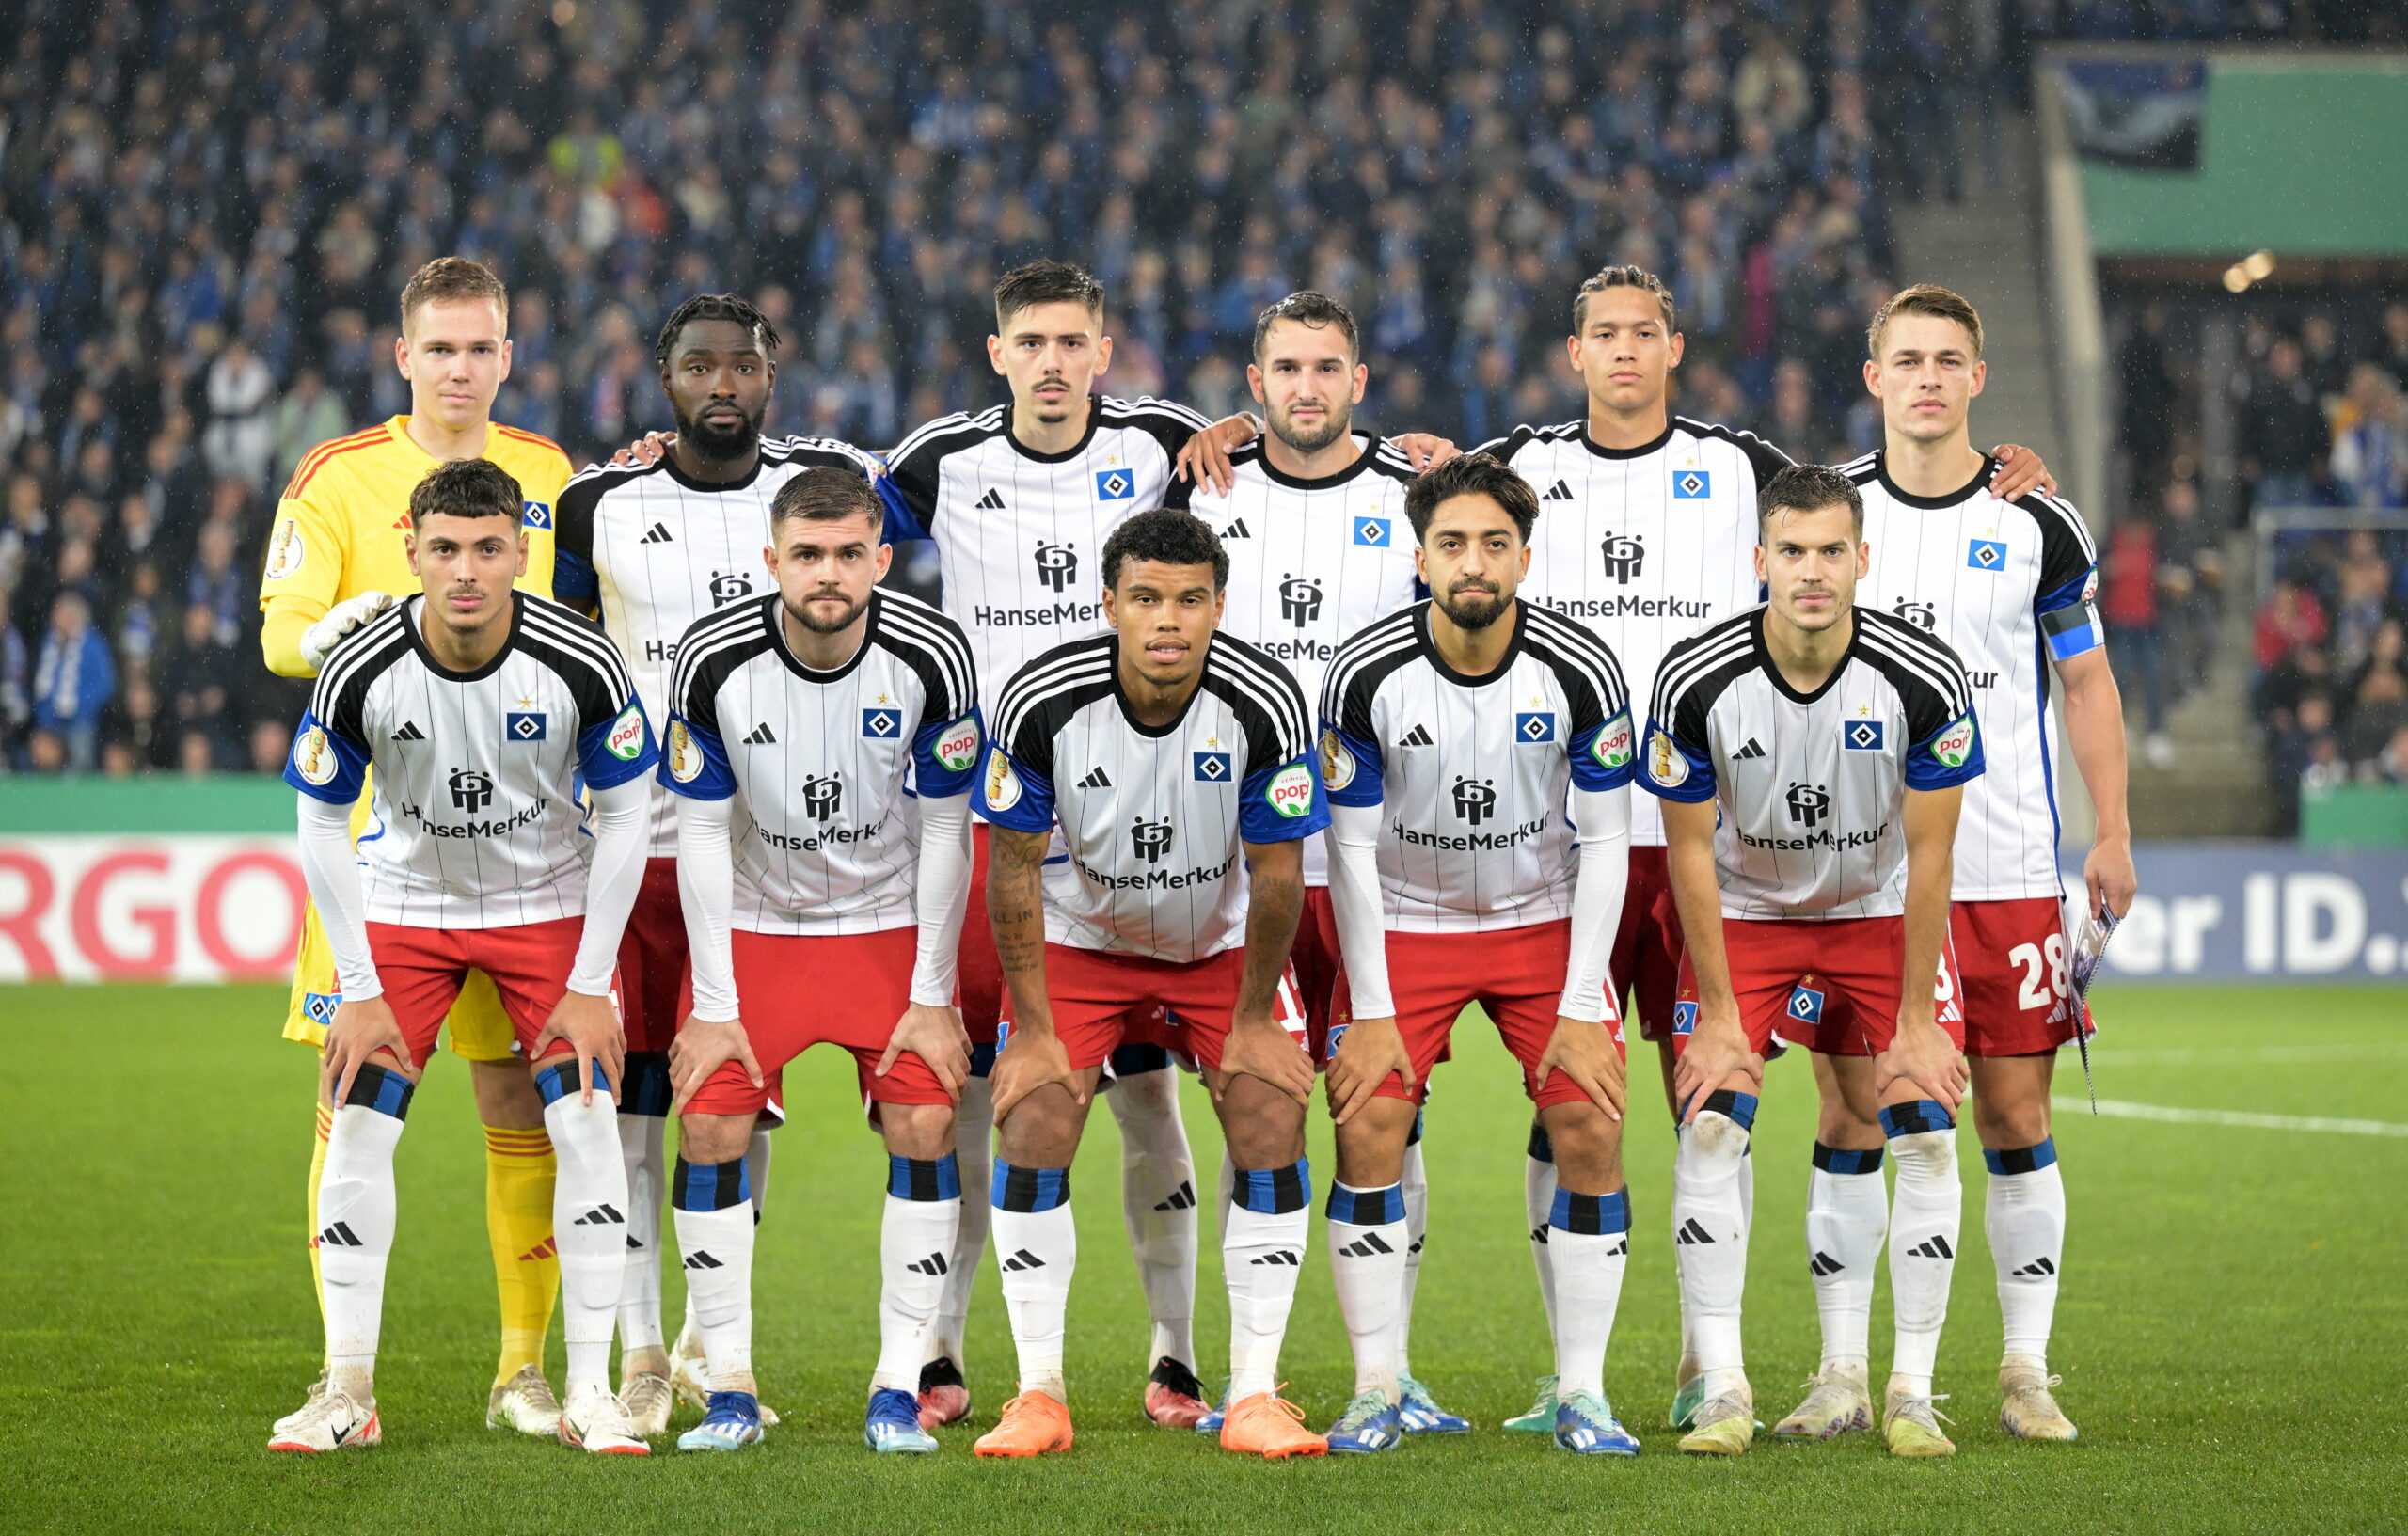 Die HSV-Startelf beim Pokal-Spiel in Bielefeld